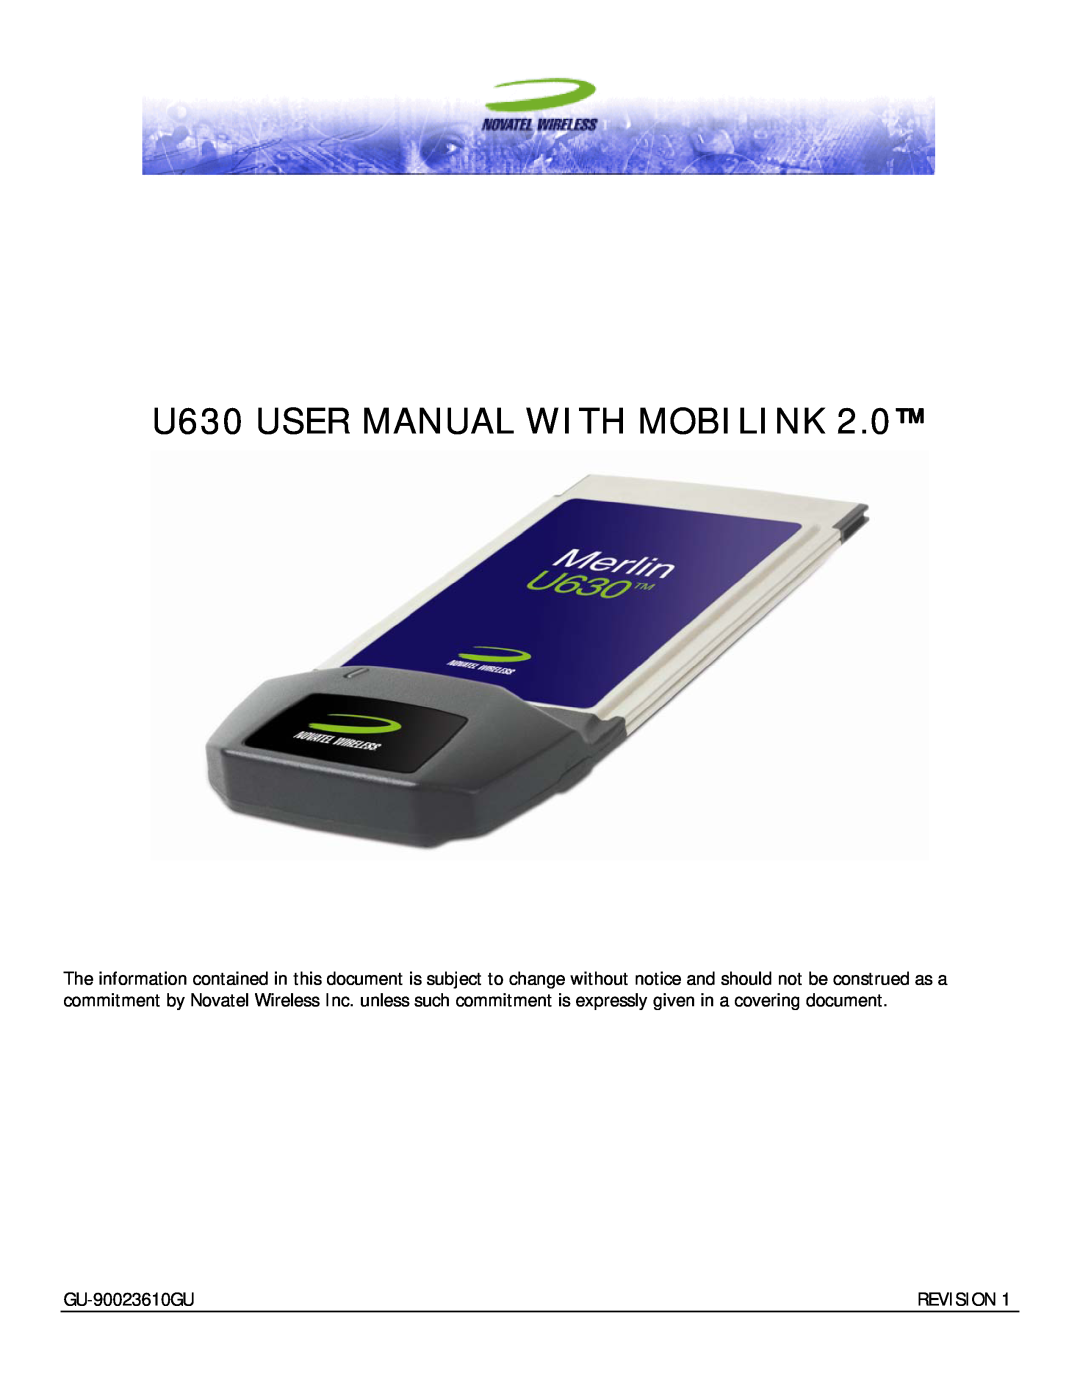 InFocus user manual U630 USER MANUAL WITH MOBILINK, GU-90023610GU, Revision 